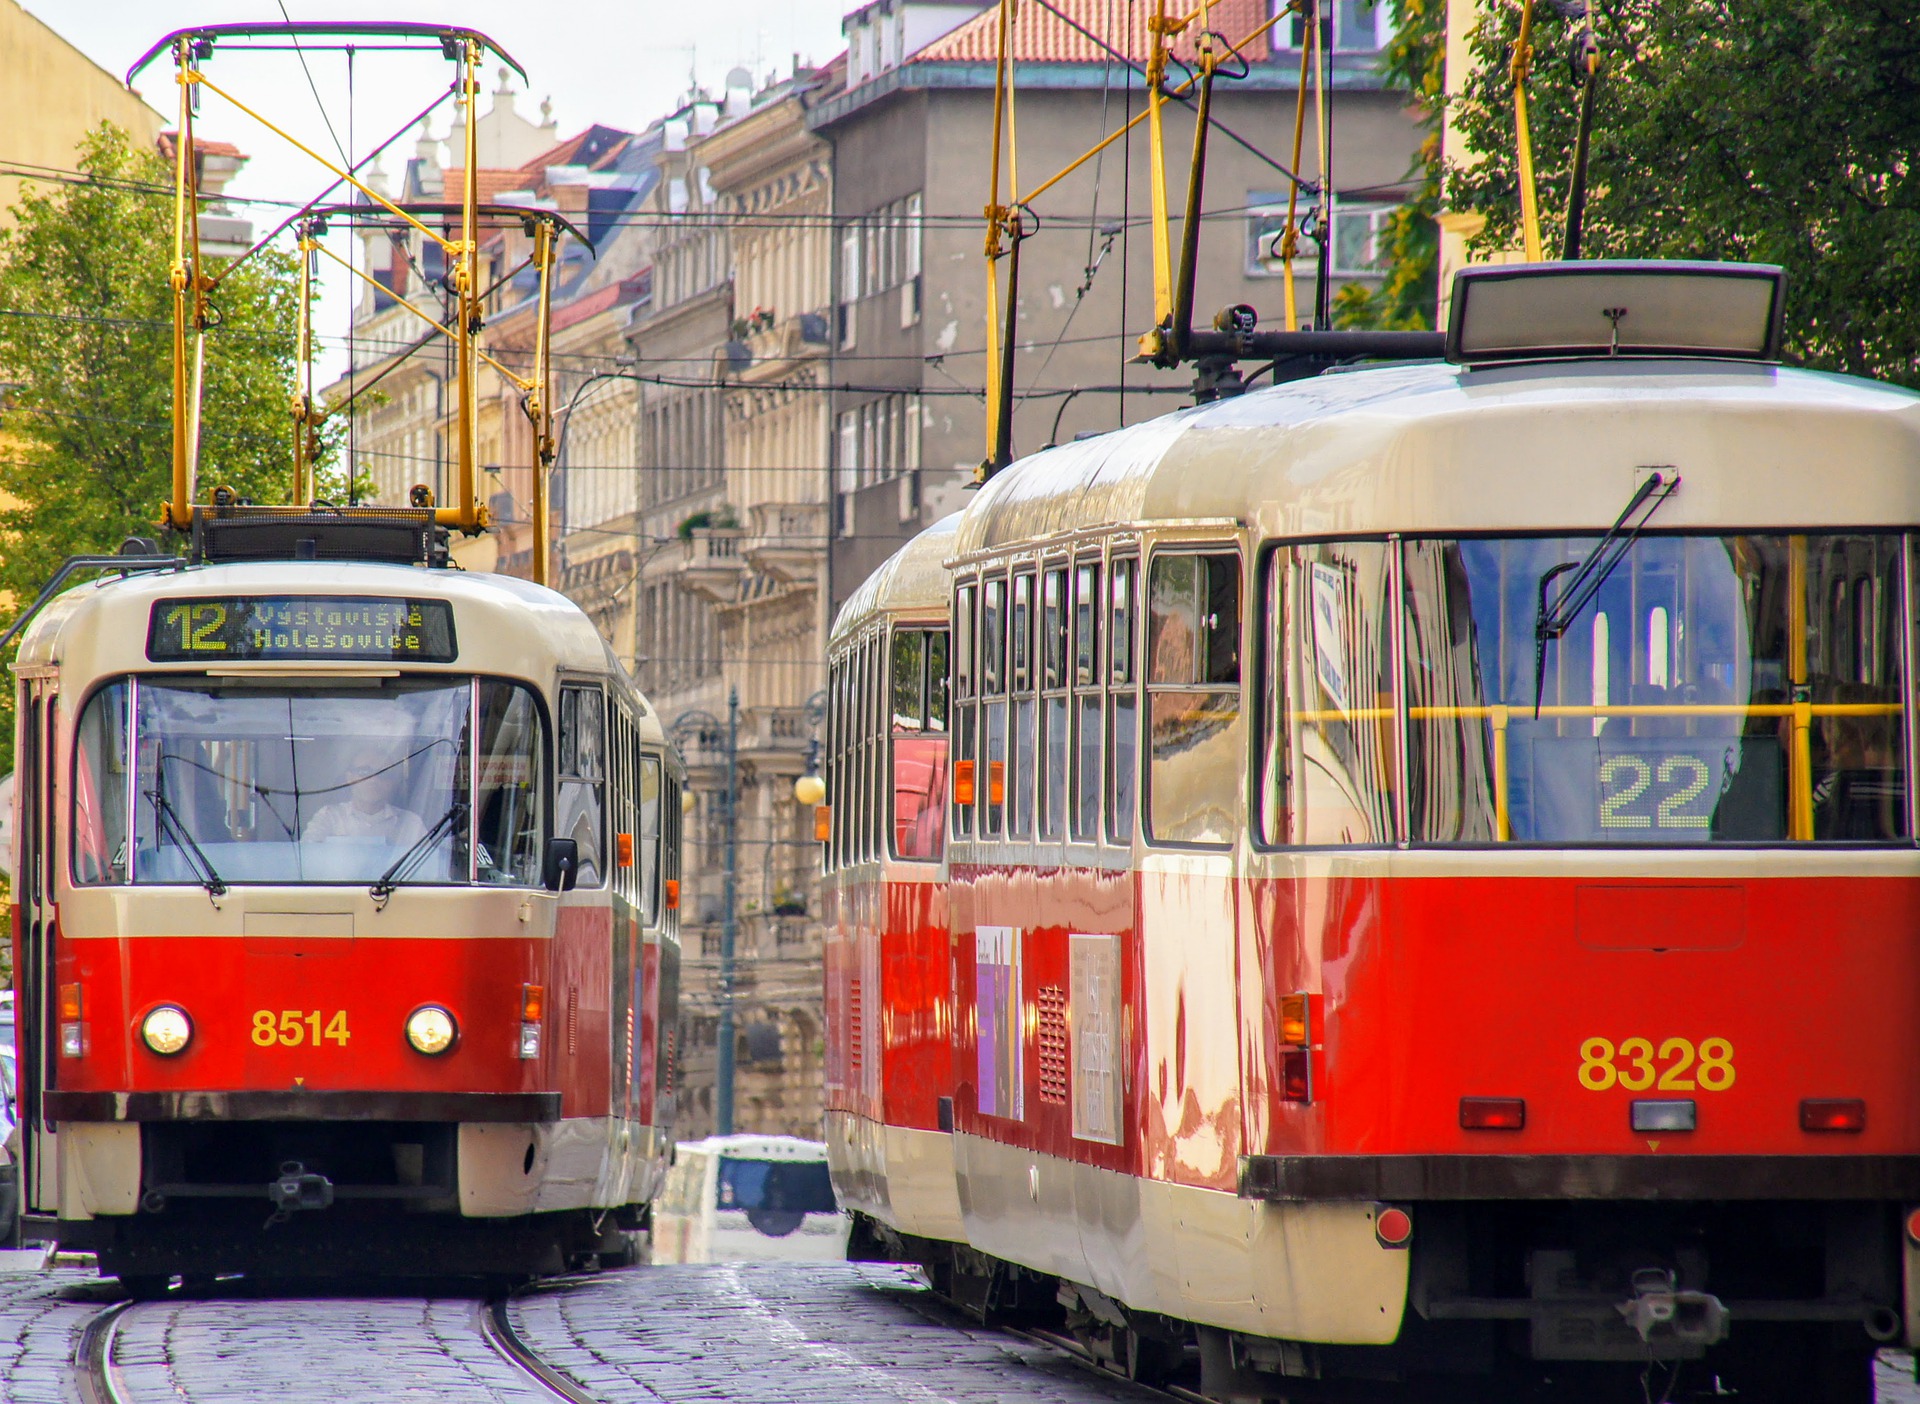 tram-gb7c49648d_1920